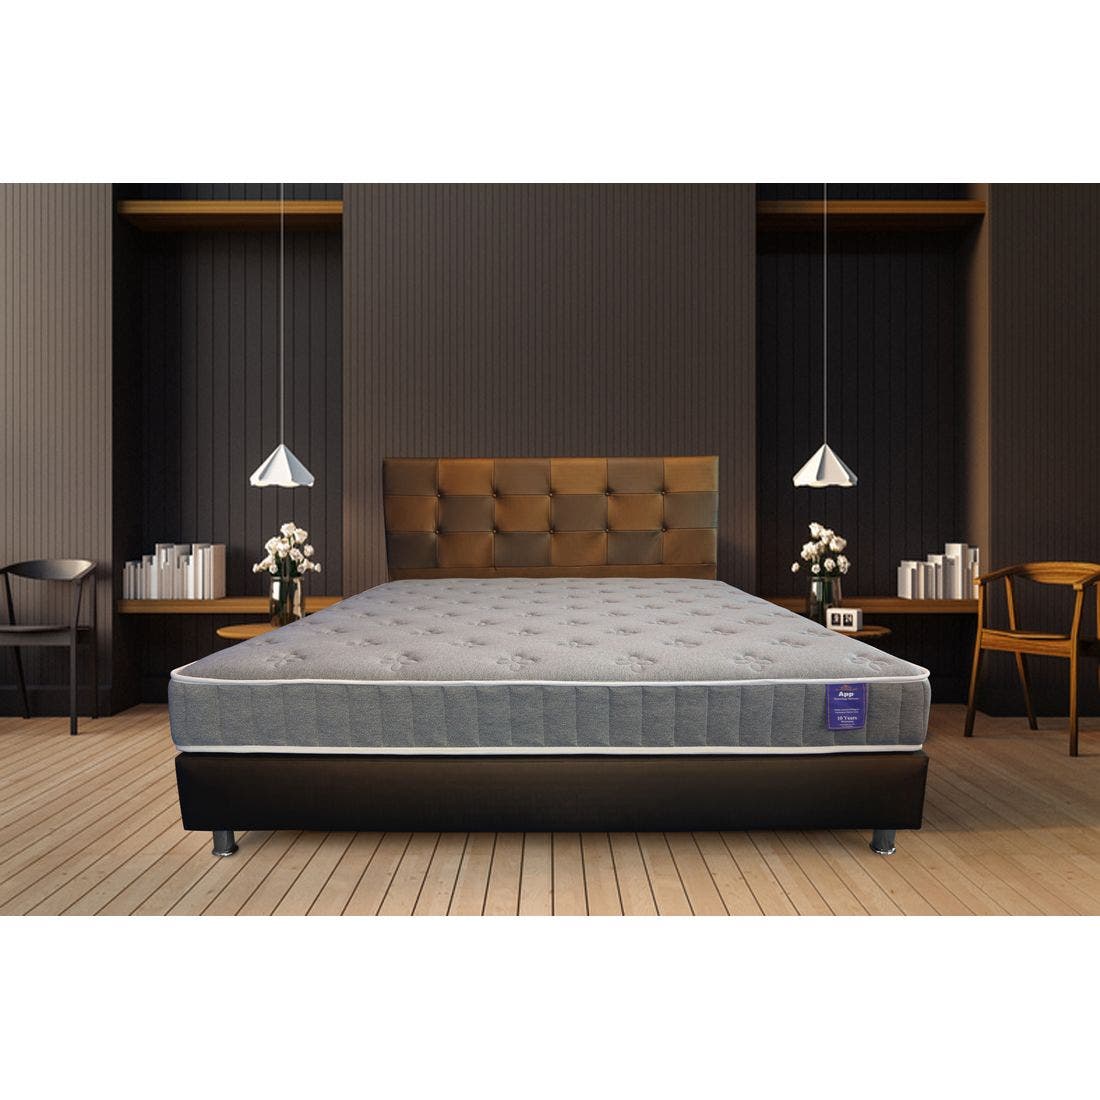 39015051-mattress-bedding-mattresses-spring-mattresses-31